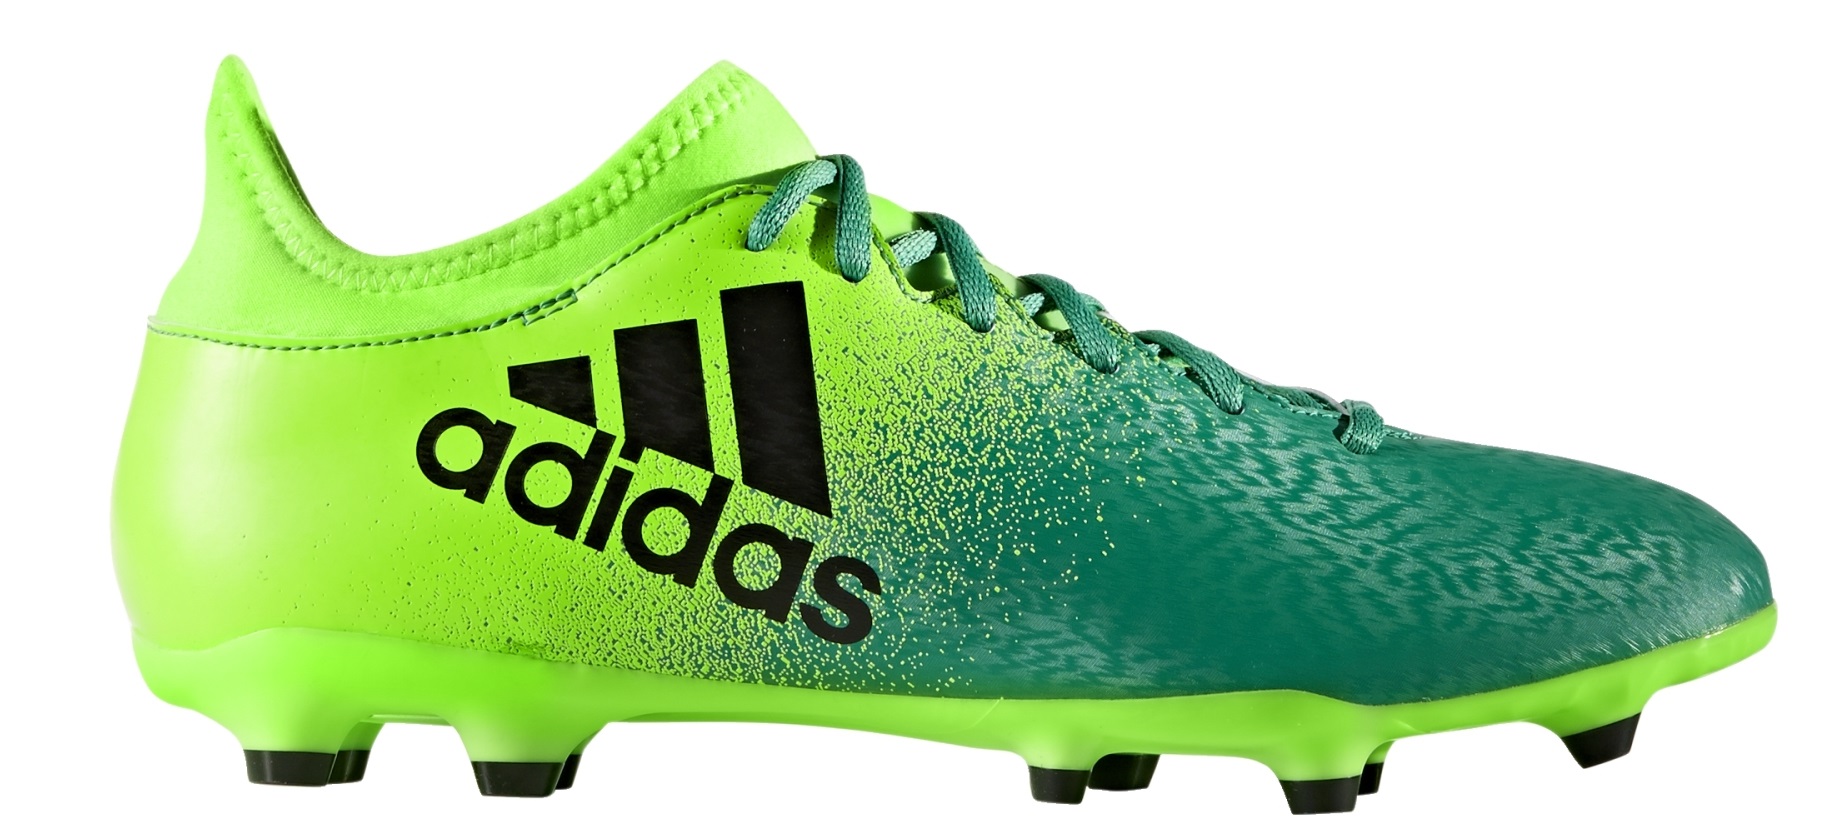 Botas de fútbol Adidas X 16,3 Dispara colore verde - Adidas - SportIT.com